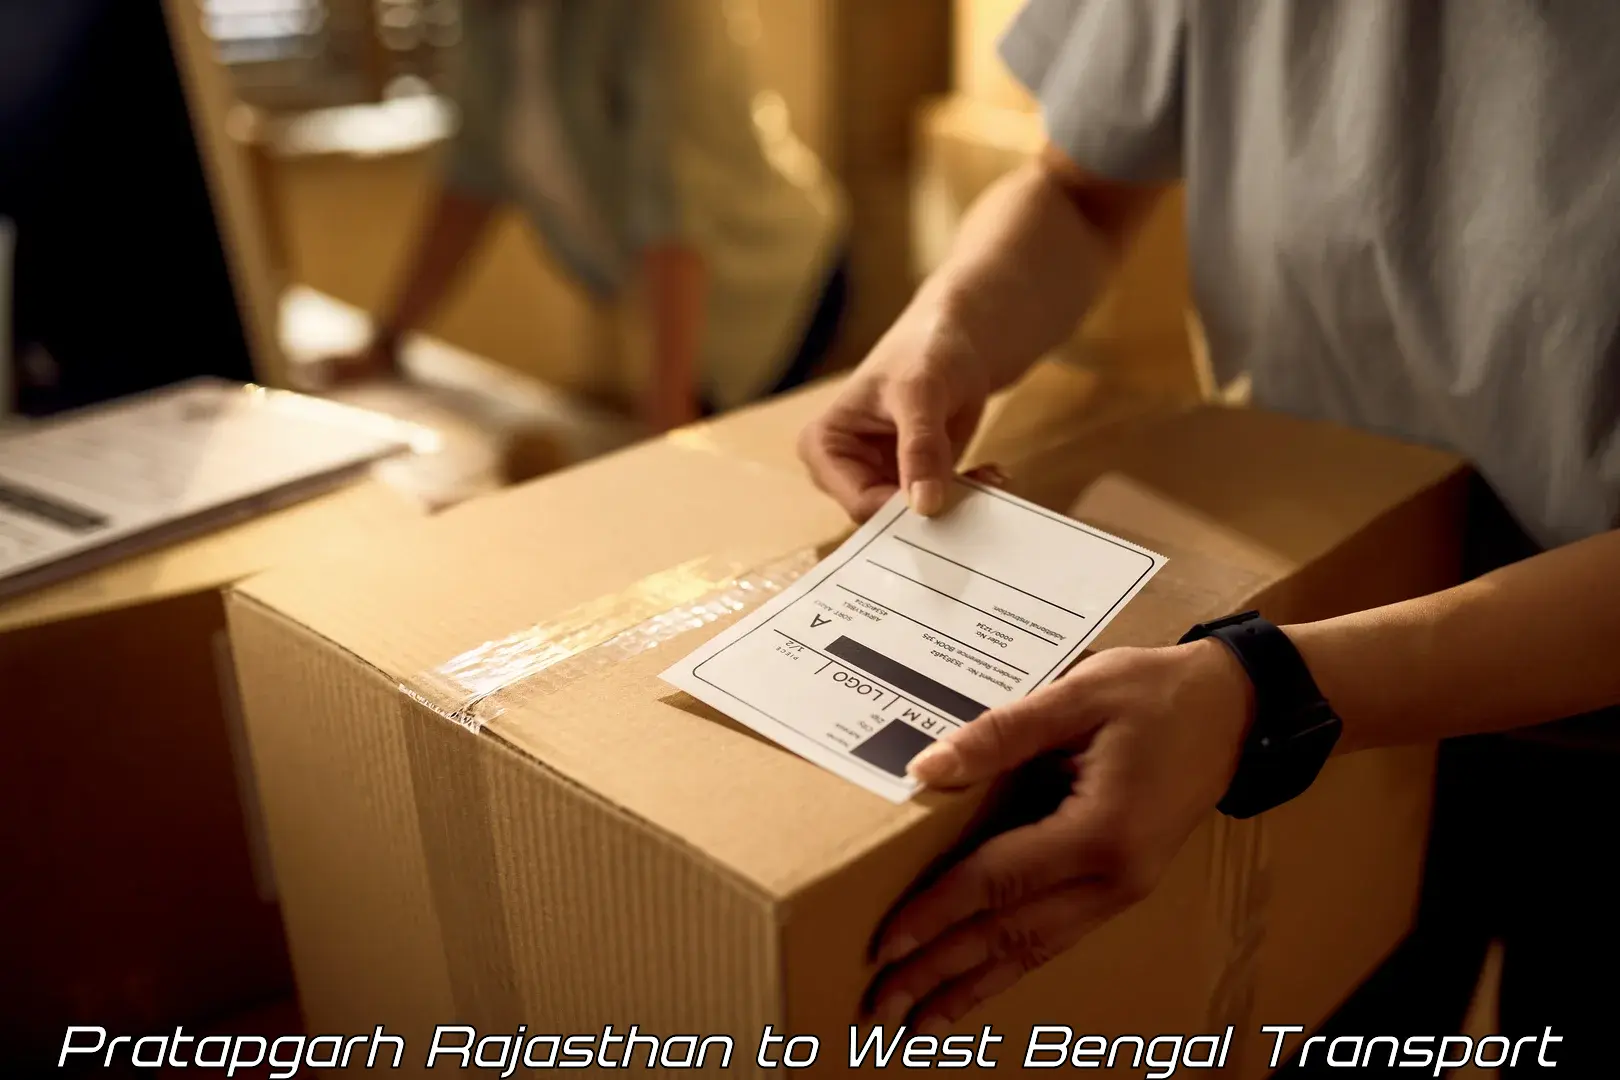 Express transport services Pratapgarh Rajasthan to Titagarh